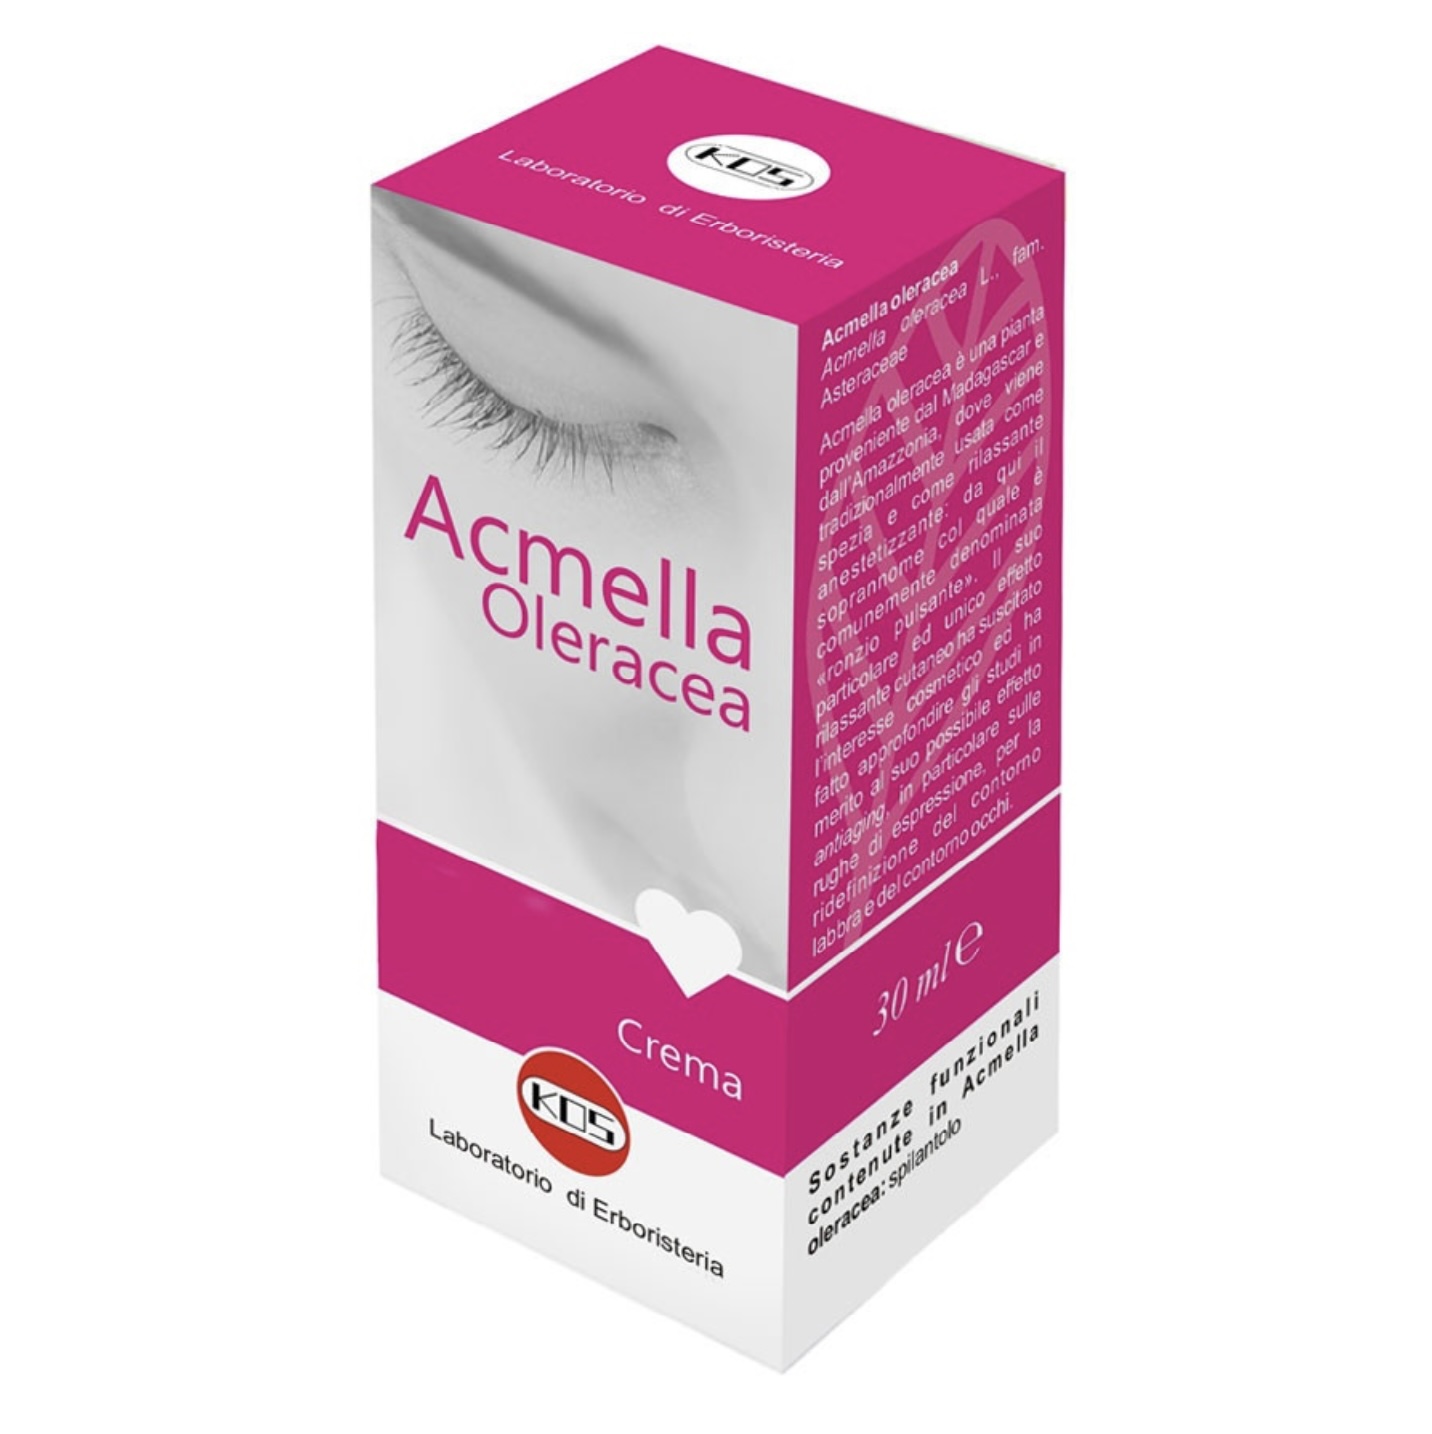 Acmella crema 30ml